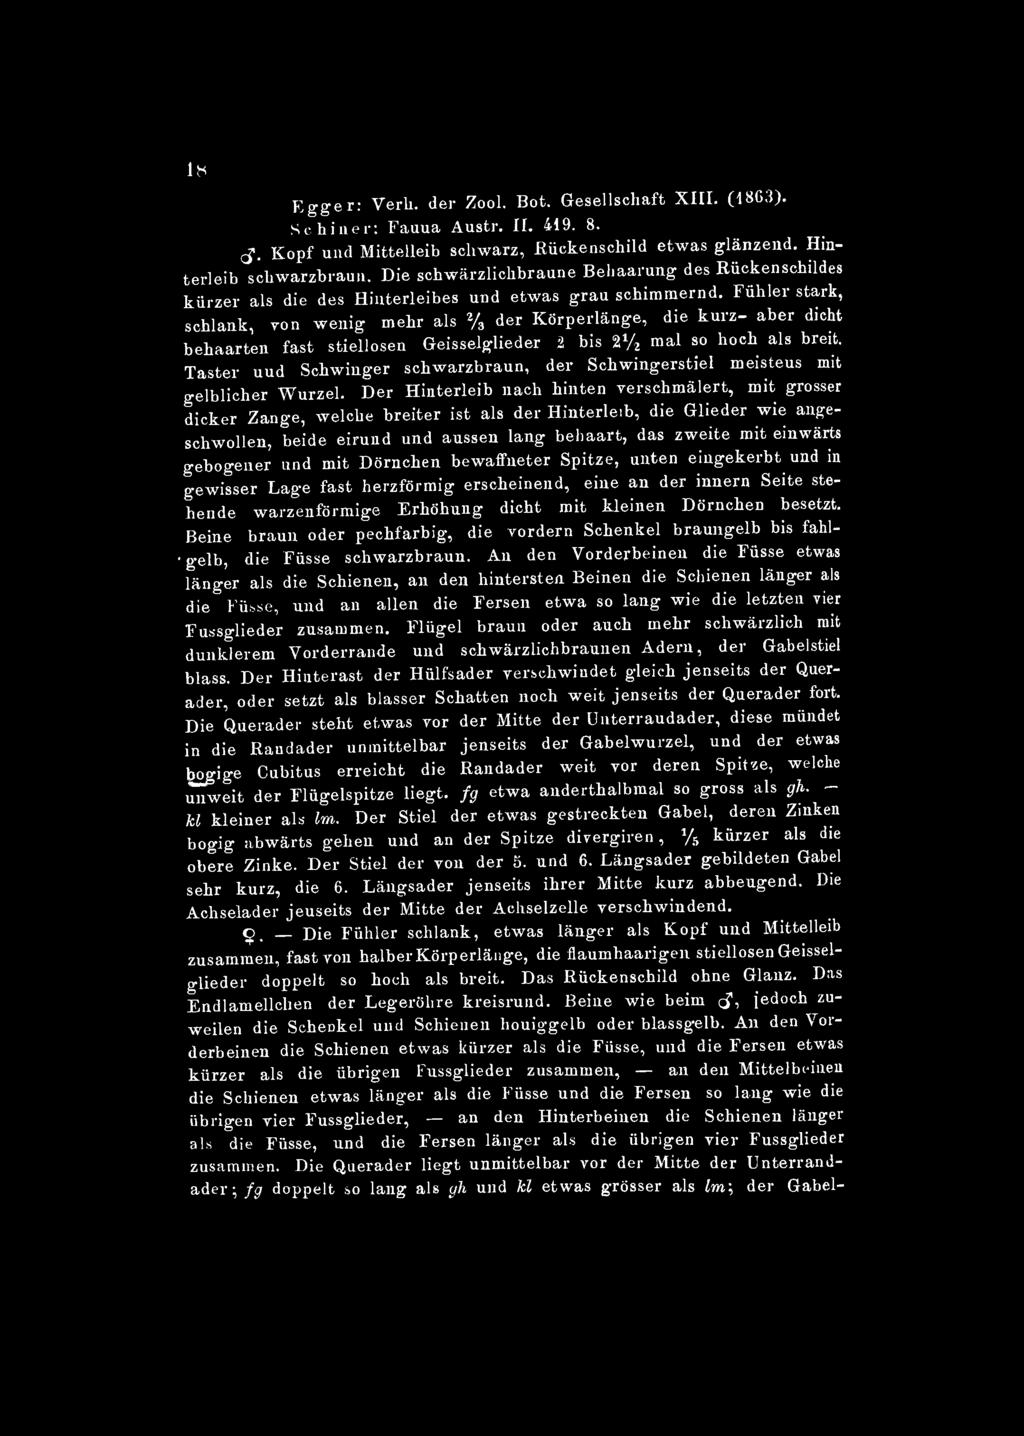 lcs Egger: Verh. der Zool. Bot. Gesellschaft XIII. (1863). Schiner: Fauna Austr. IL 419. 8. <$. Kopf und Mittelleib schwarz, Rückenschild etwas glänzend. Hinterleib schwarzbraun.